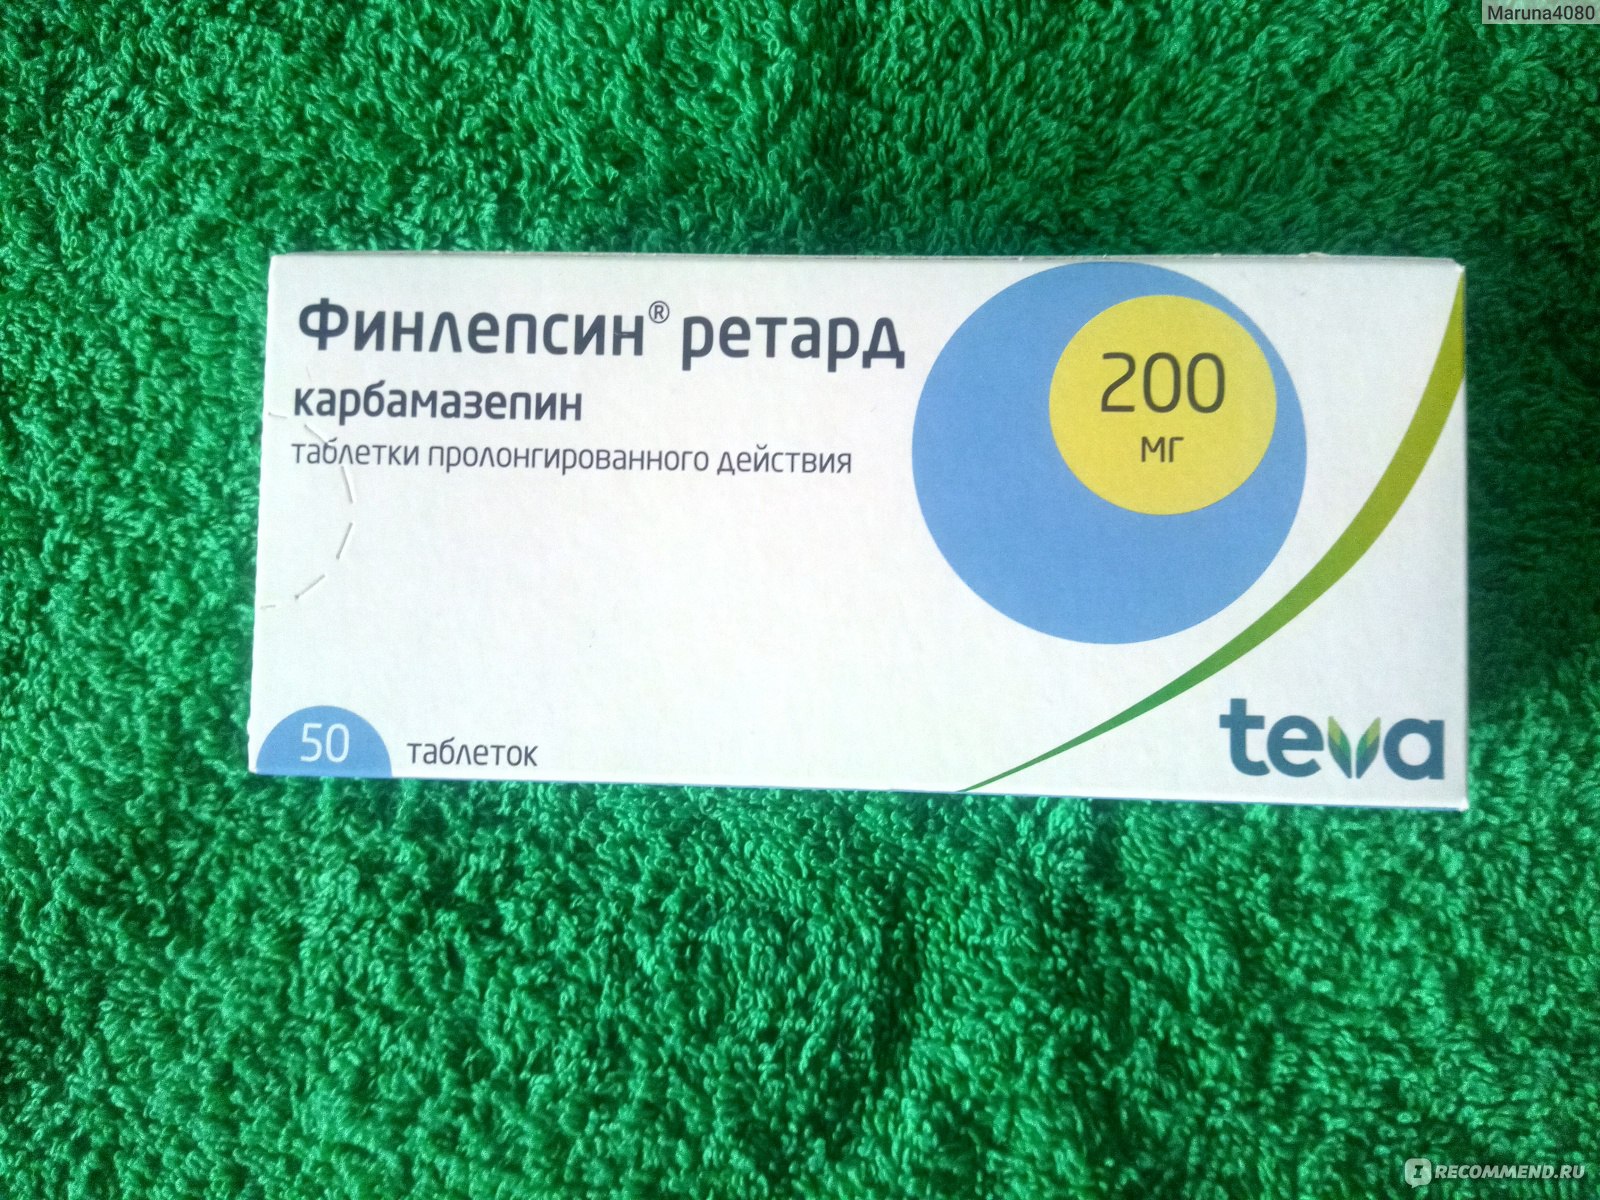 Лекарственные средства TeVa Финлепсин ретард - «Карбамазепин при .